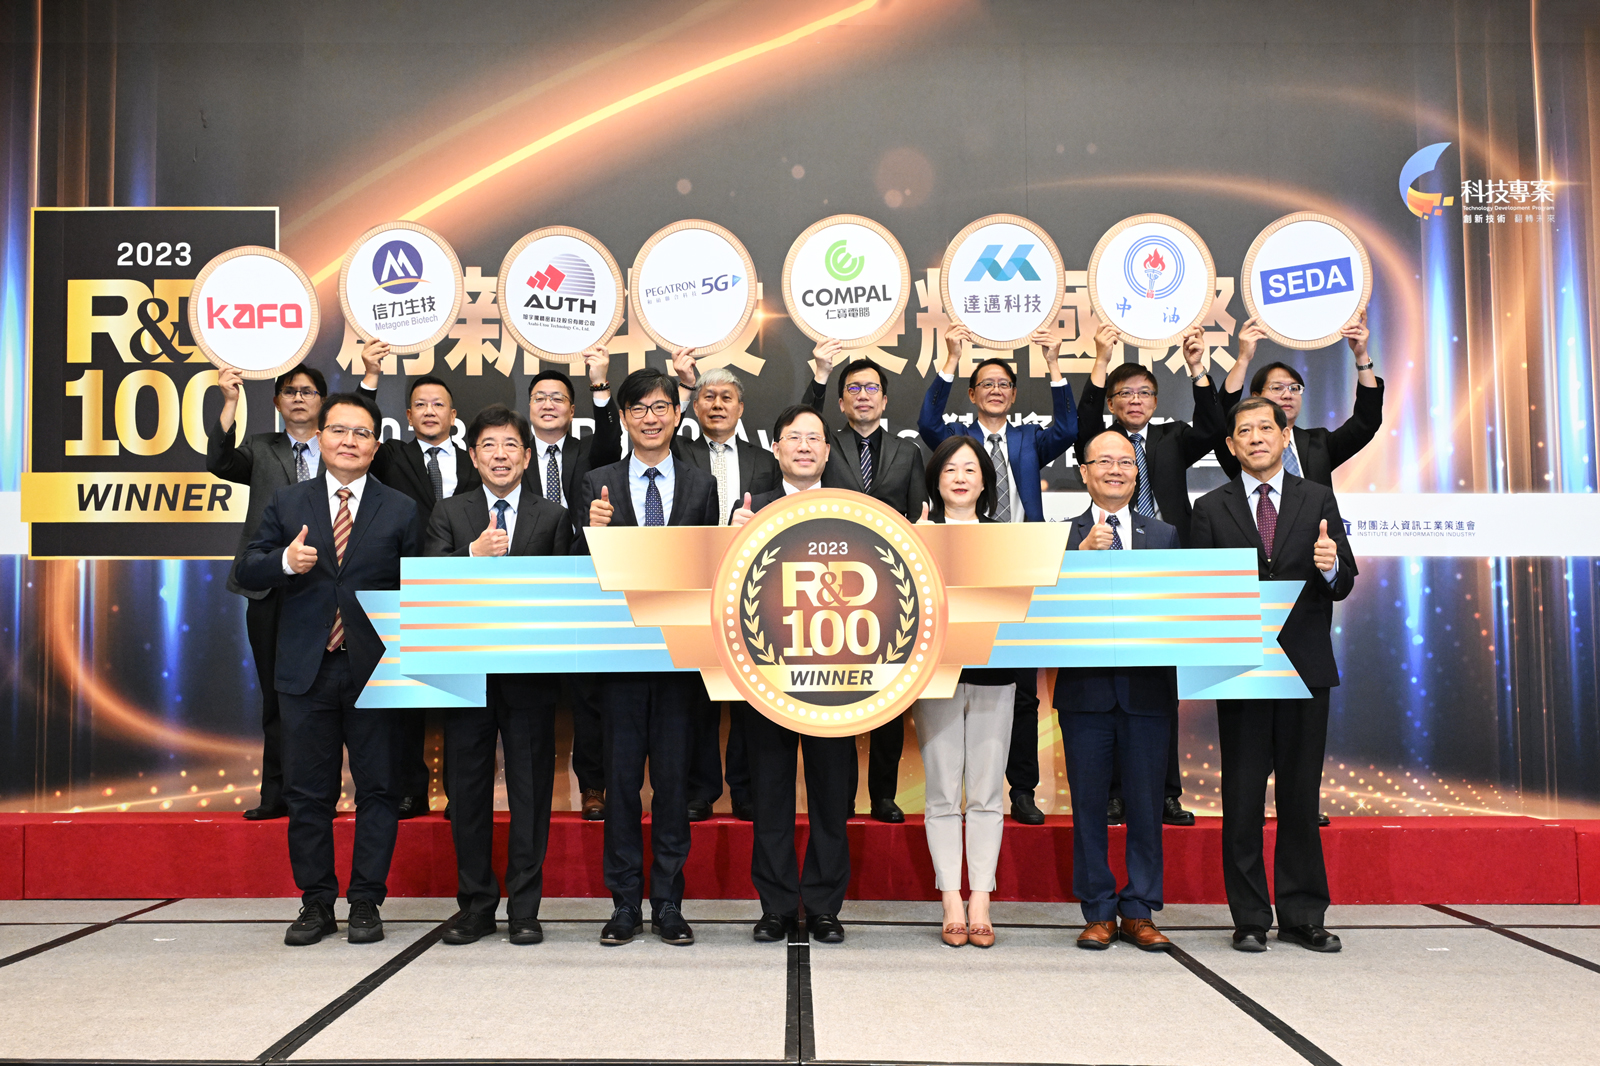 臺灣勇奪12項全球百大科技研發獎 僅次於美國 獲獎數全球第二